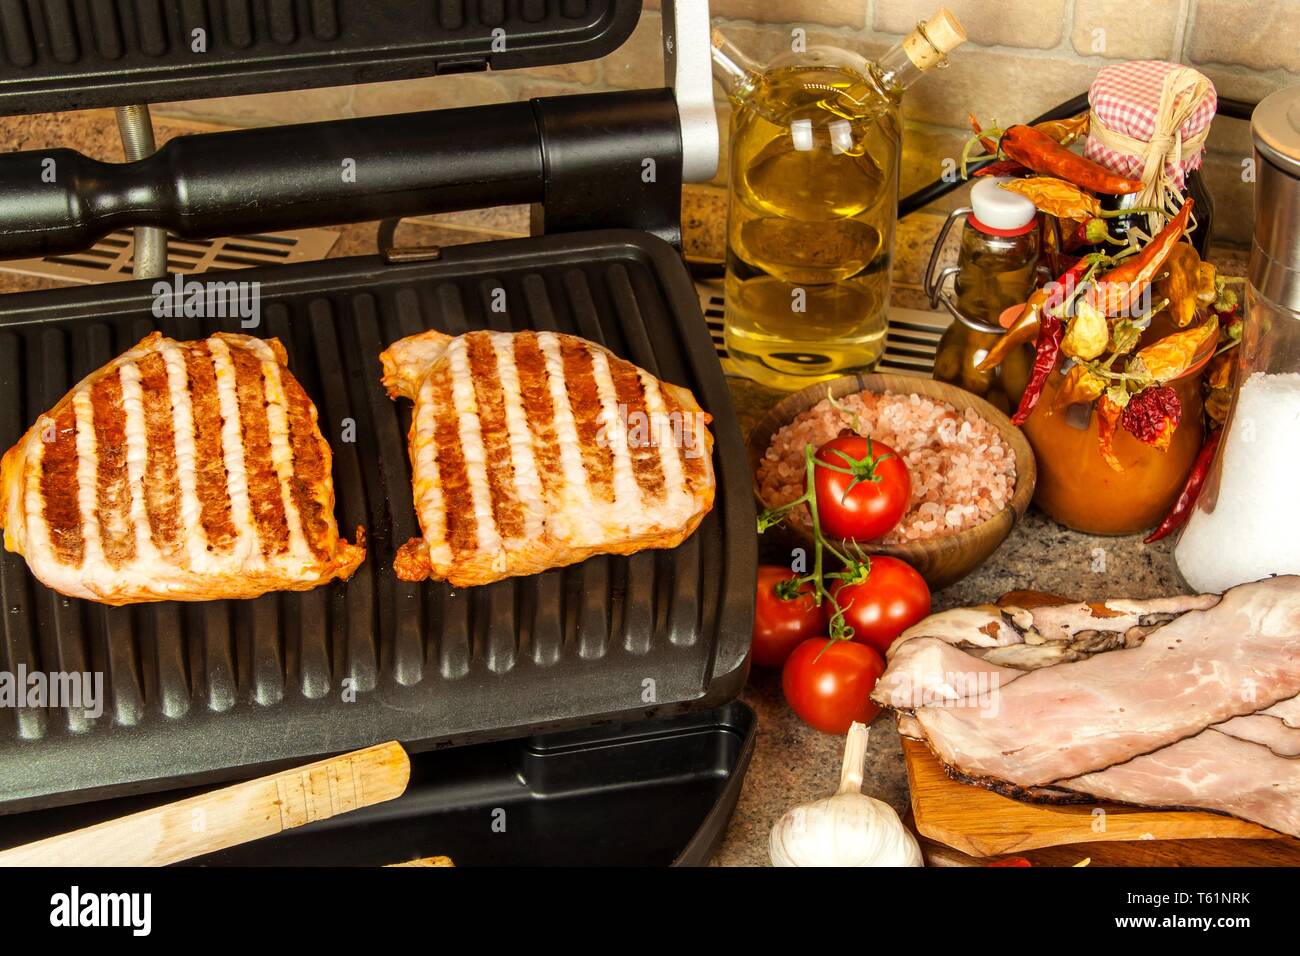 https://c8.alamy.com/compes/t61nrk/grill-steak-en-una-estufa-electrica-cuello-de-cerdo-frito-sobre-pequenos-grill-electrico-cocinar-en-casa-barbacoa-saludable-catering-para-los-amigos-grill-electrico-t61nrk.jpg